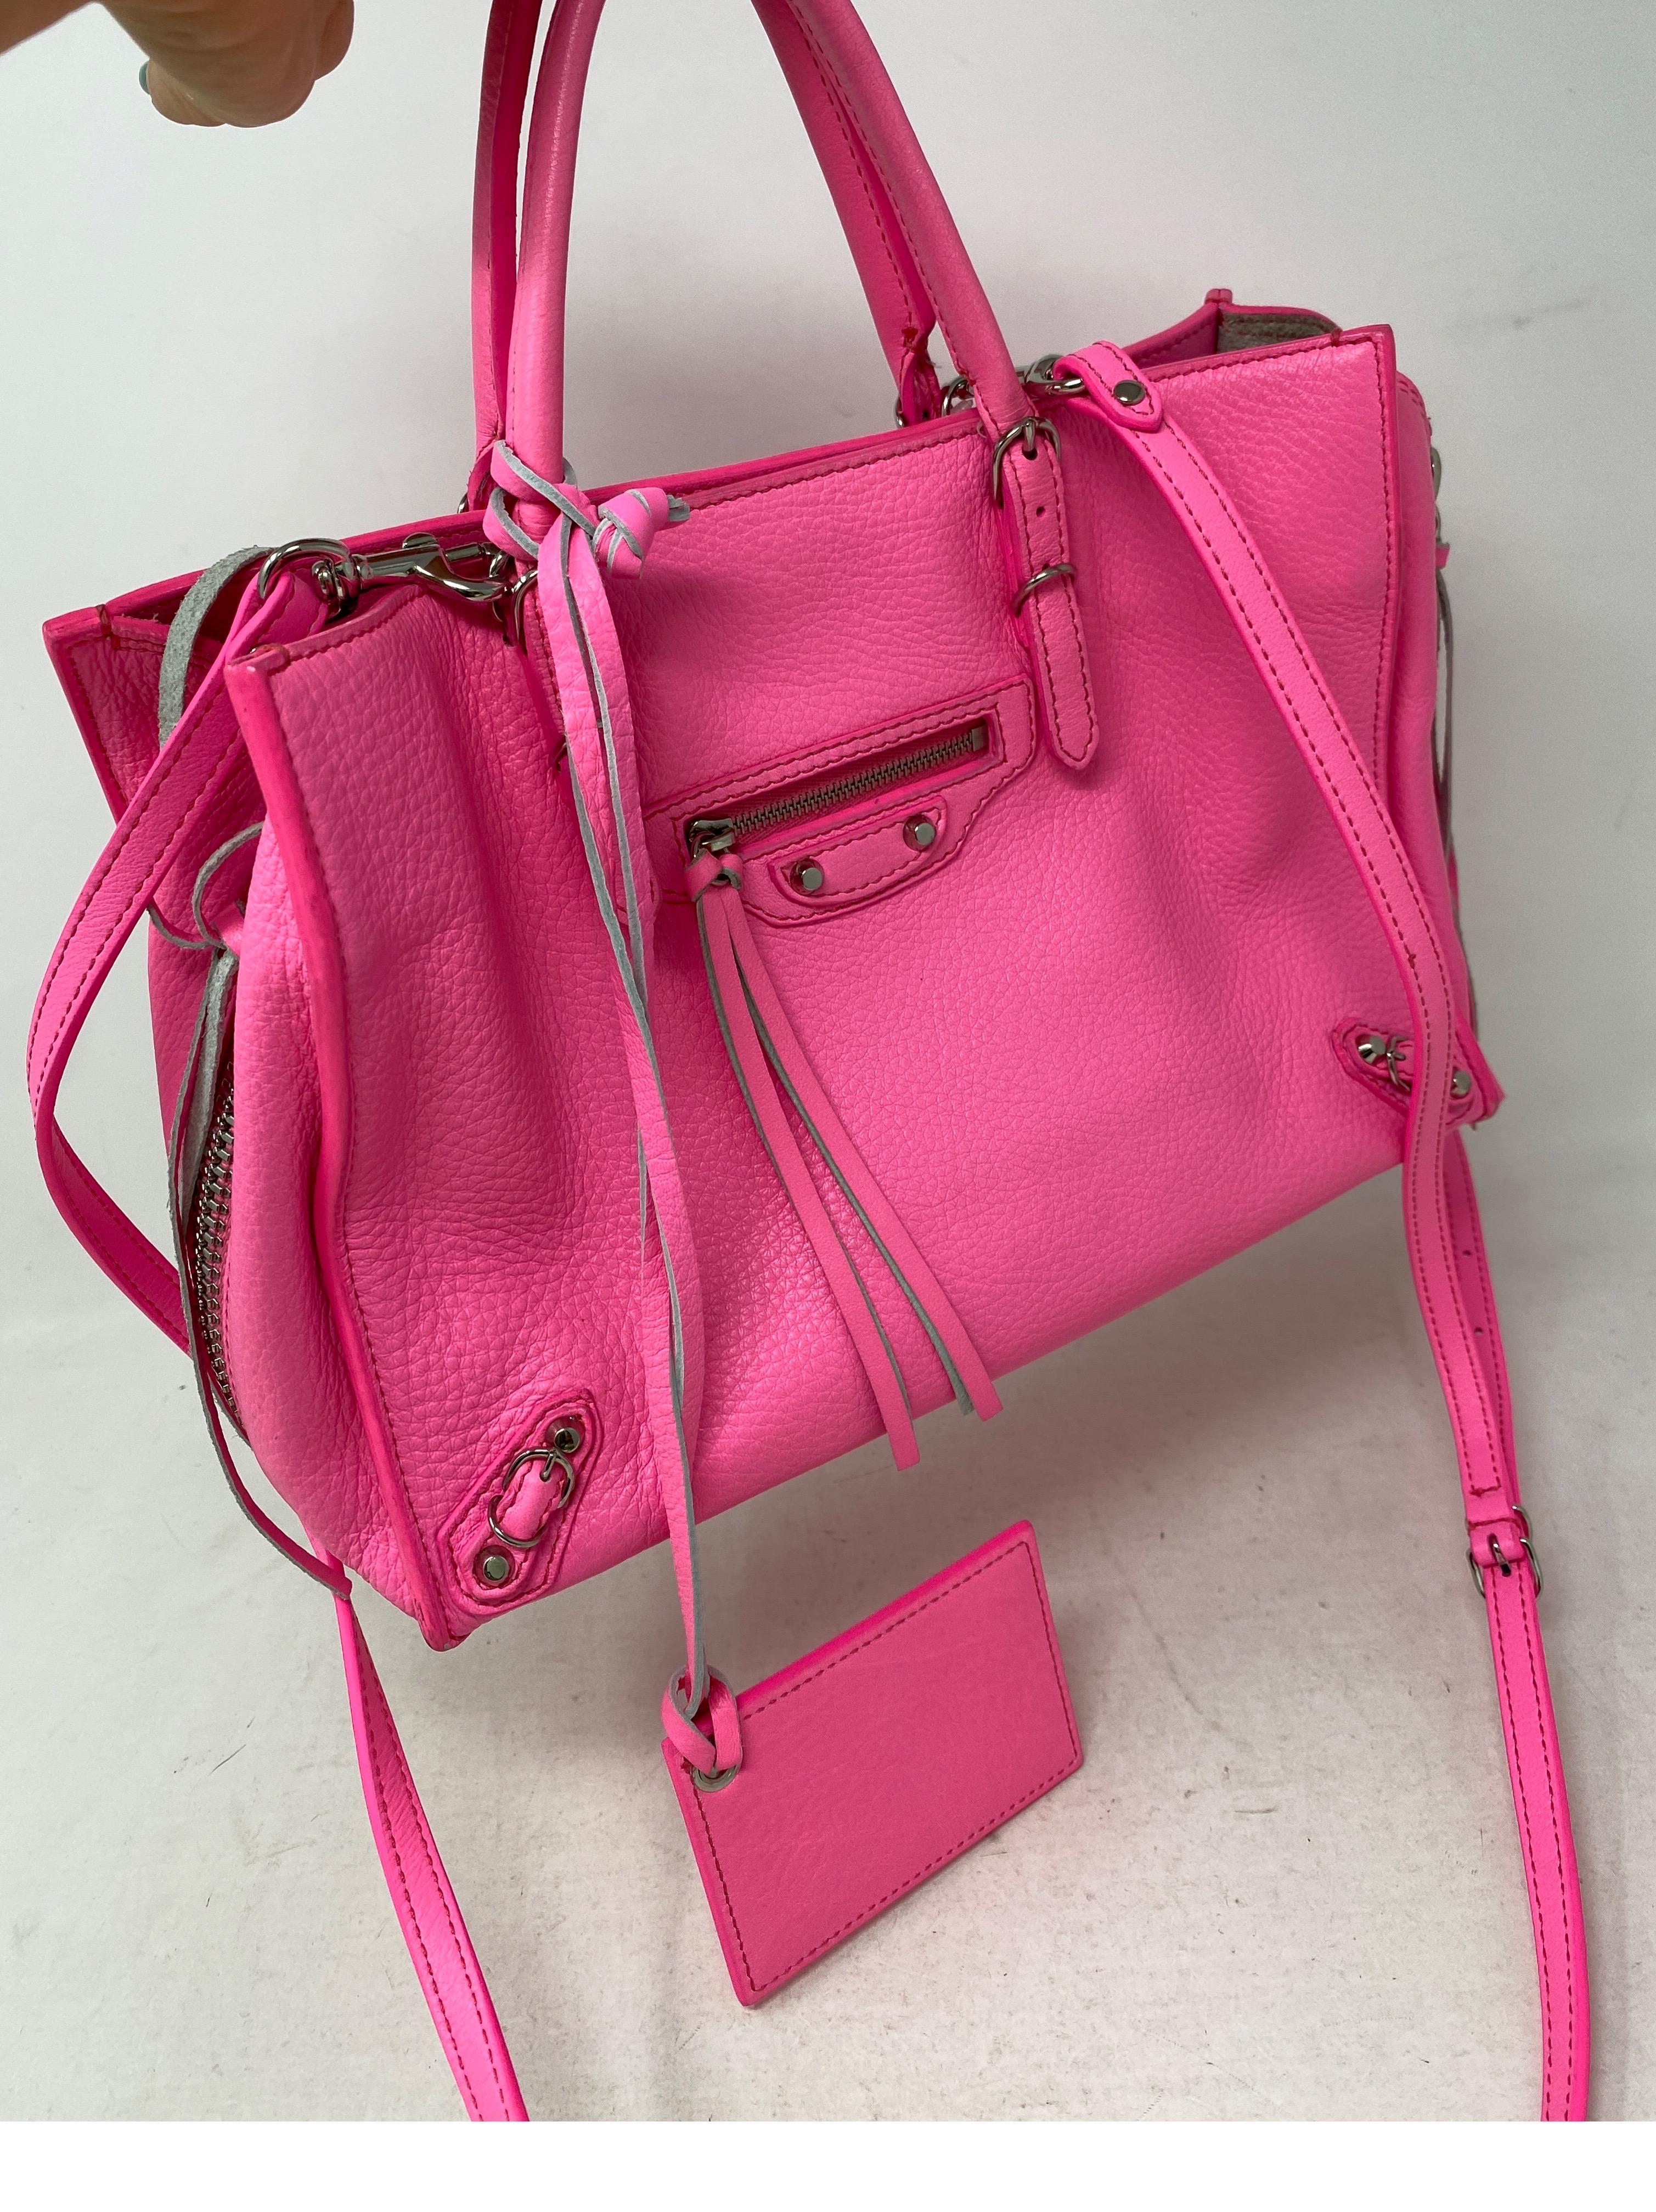 balenciaga neon pink bag